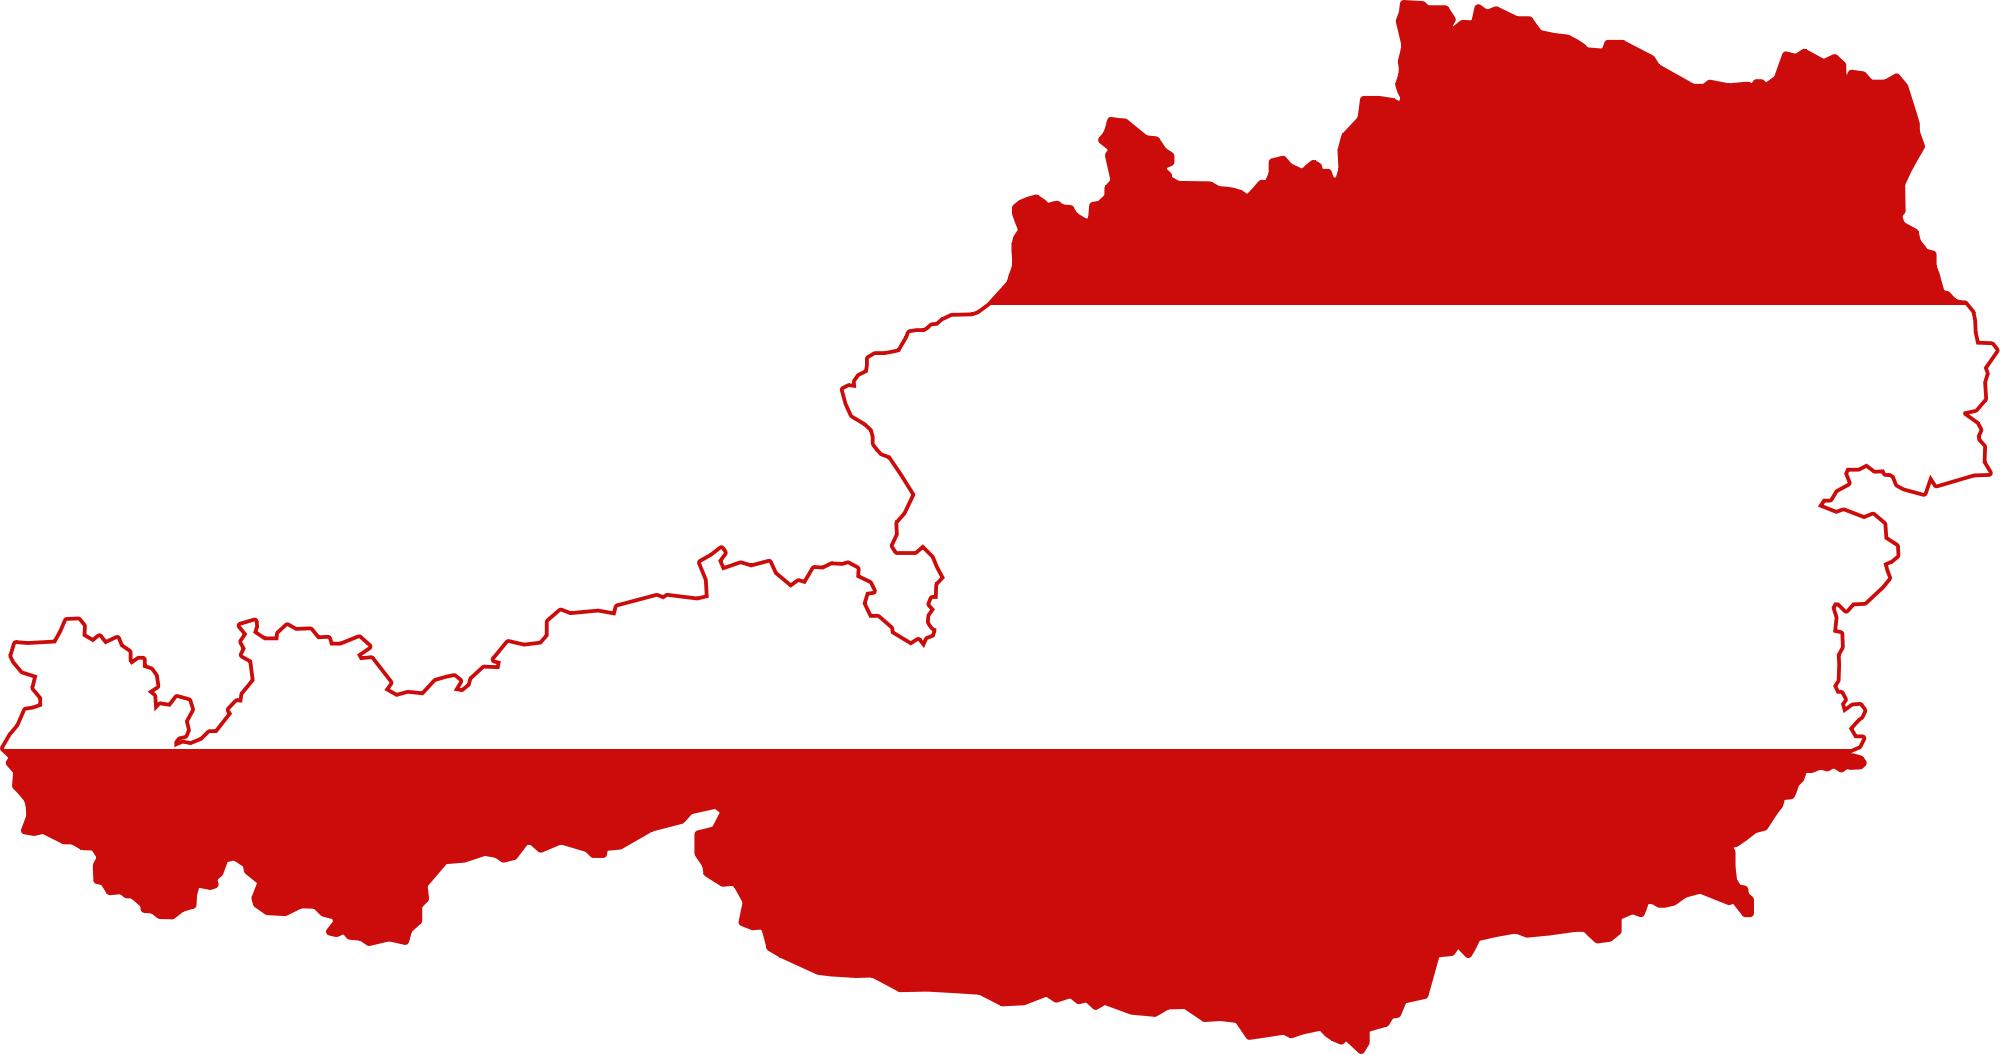 Được biết đến với hình ảnh của bản đồ trên áo cờ, áo cờ Áo đang trở thành xu hướng thời trang mới. Với thiết kế độc đáo và tinh tế, áo cờ Áo sẽ khiến bạn trông nổi bật và cá tính hơn trong mùa đông sắp tới.